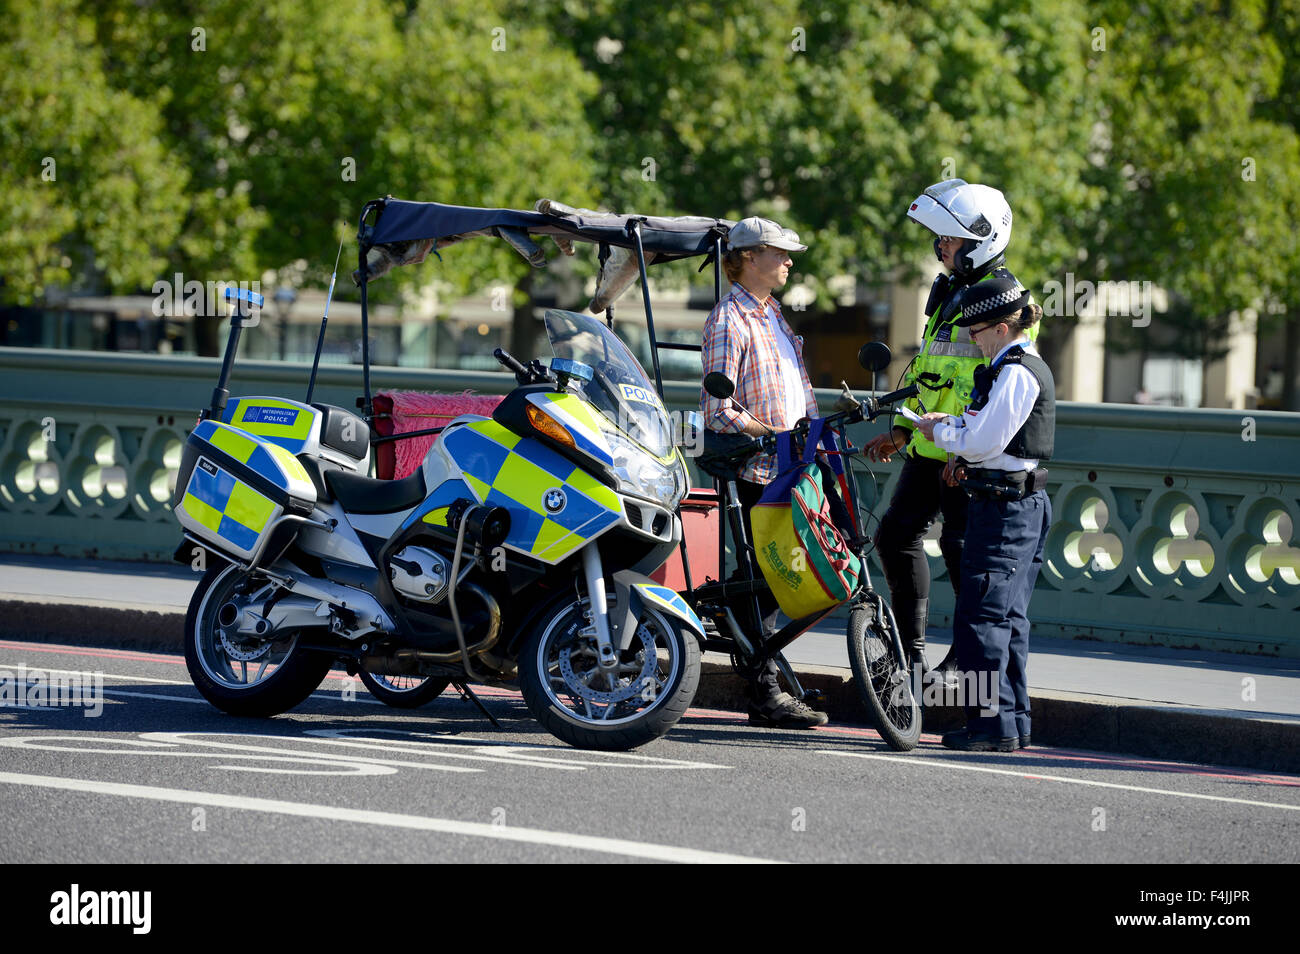 Rikscha, London, Polizei stoppen und Frage eine Rikscha Fahrer, London, England, UK Stockfoto